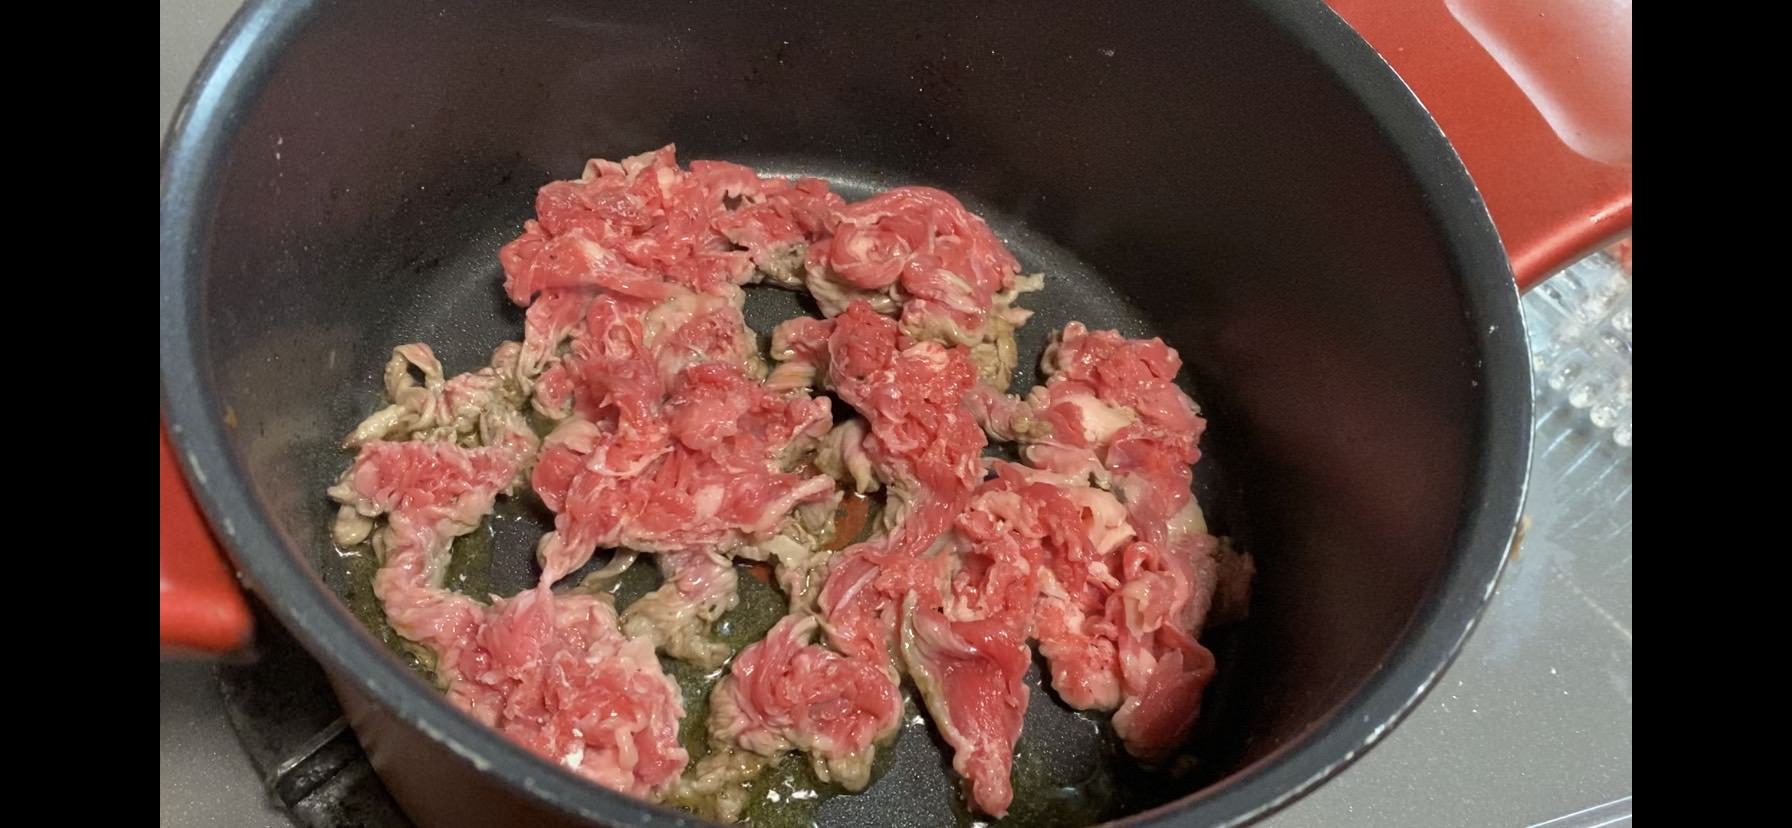 下味をつけた牛細切れ肉を広げながら、オリーブオイルで焼いていく様子の画像です